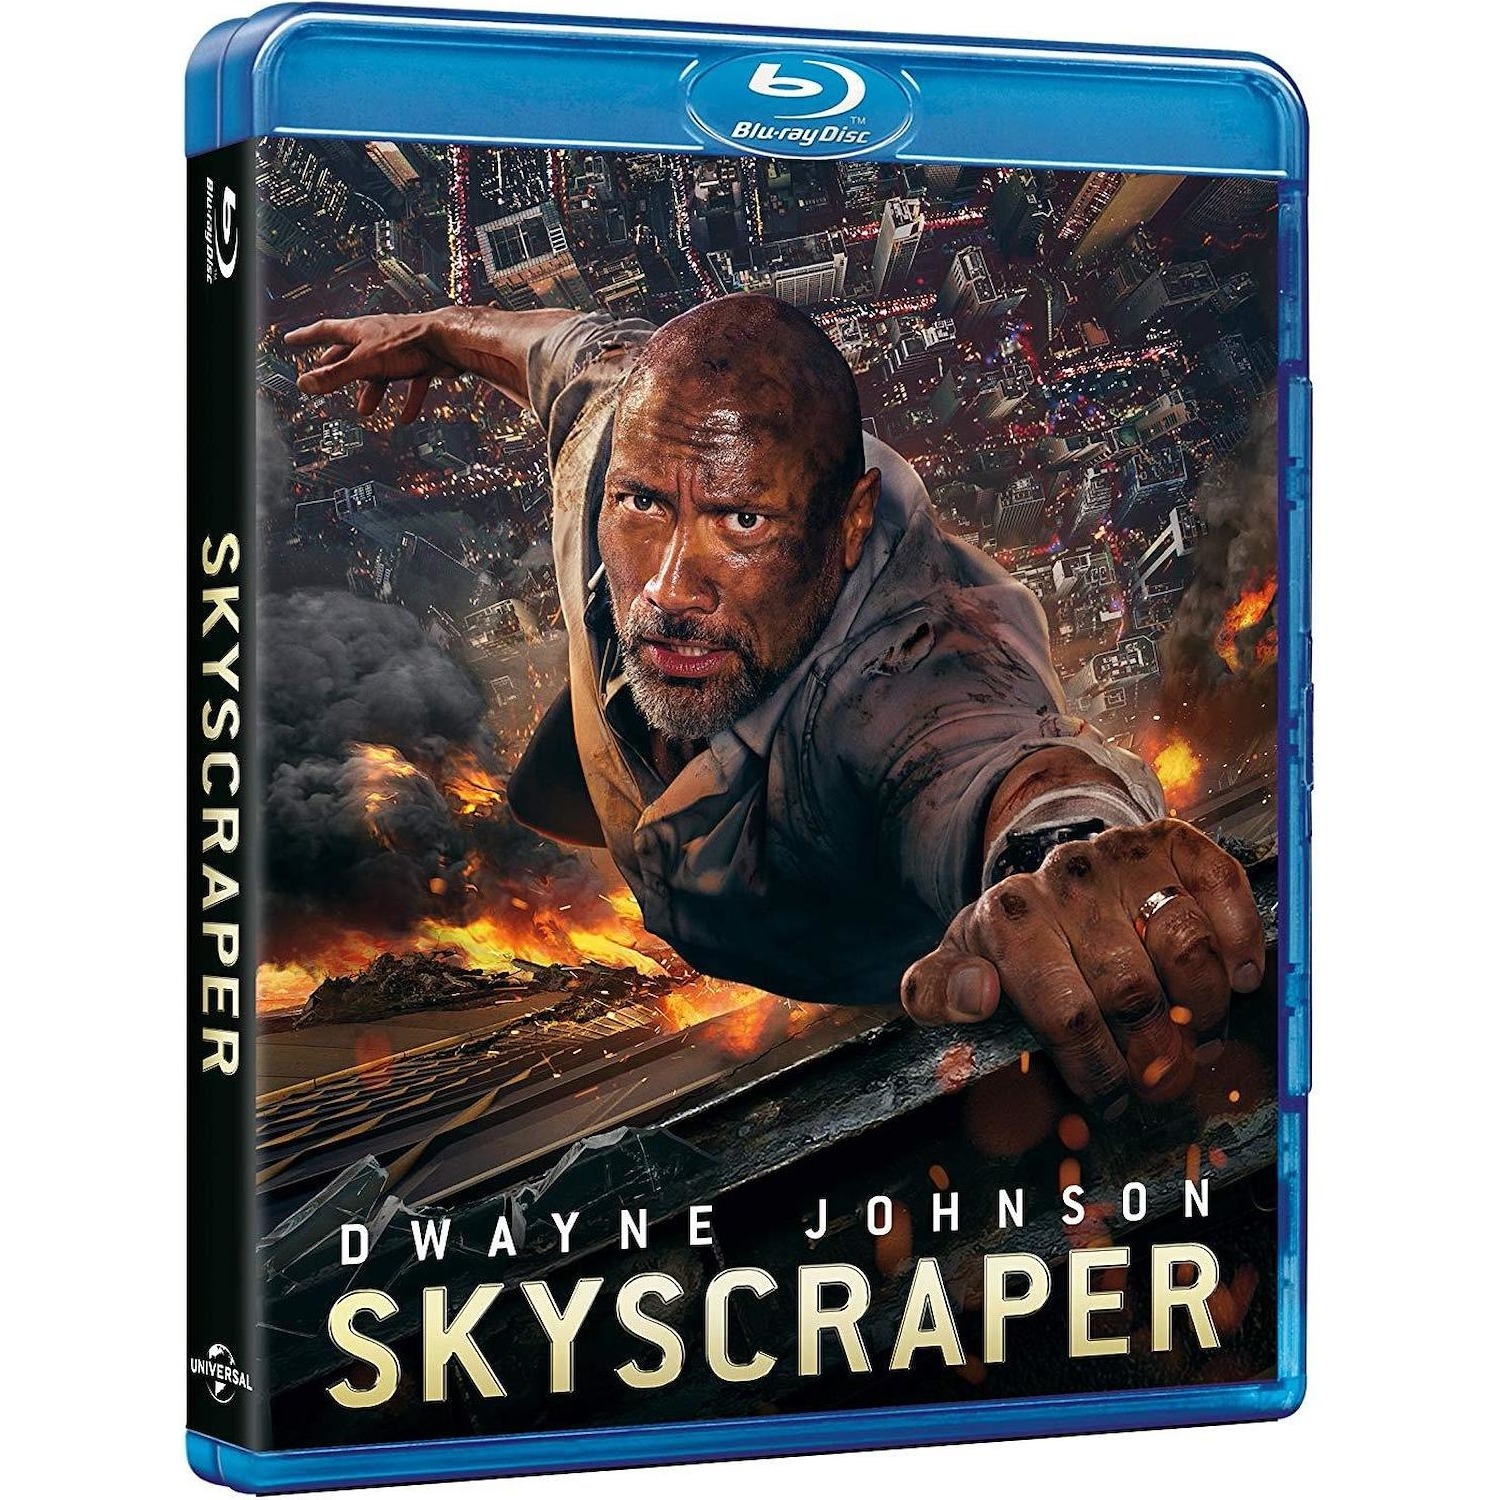 Immagine per Blu-ray Skyscraper da DIMOStore